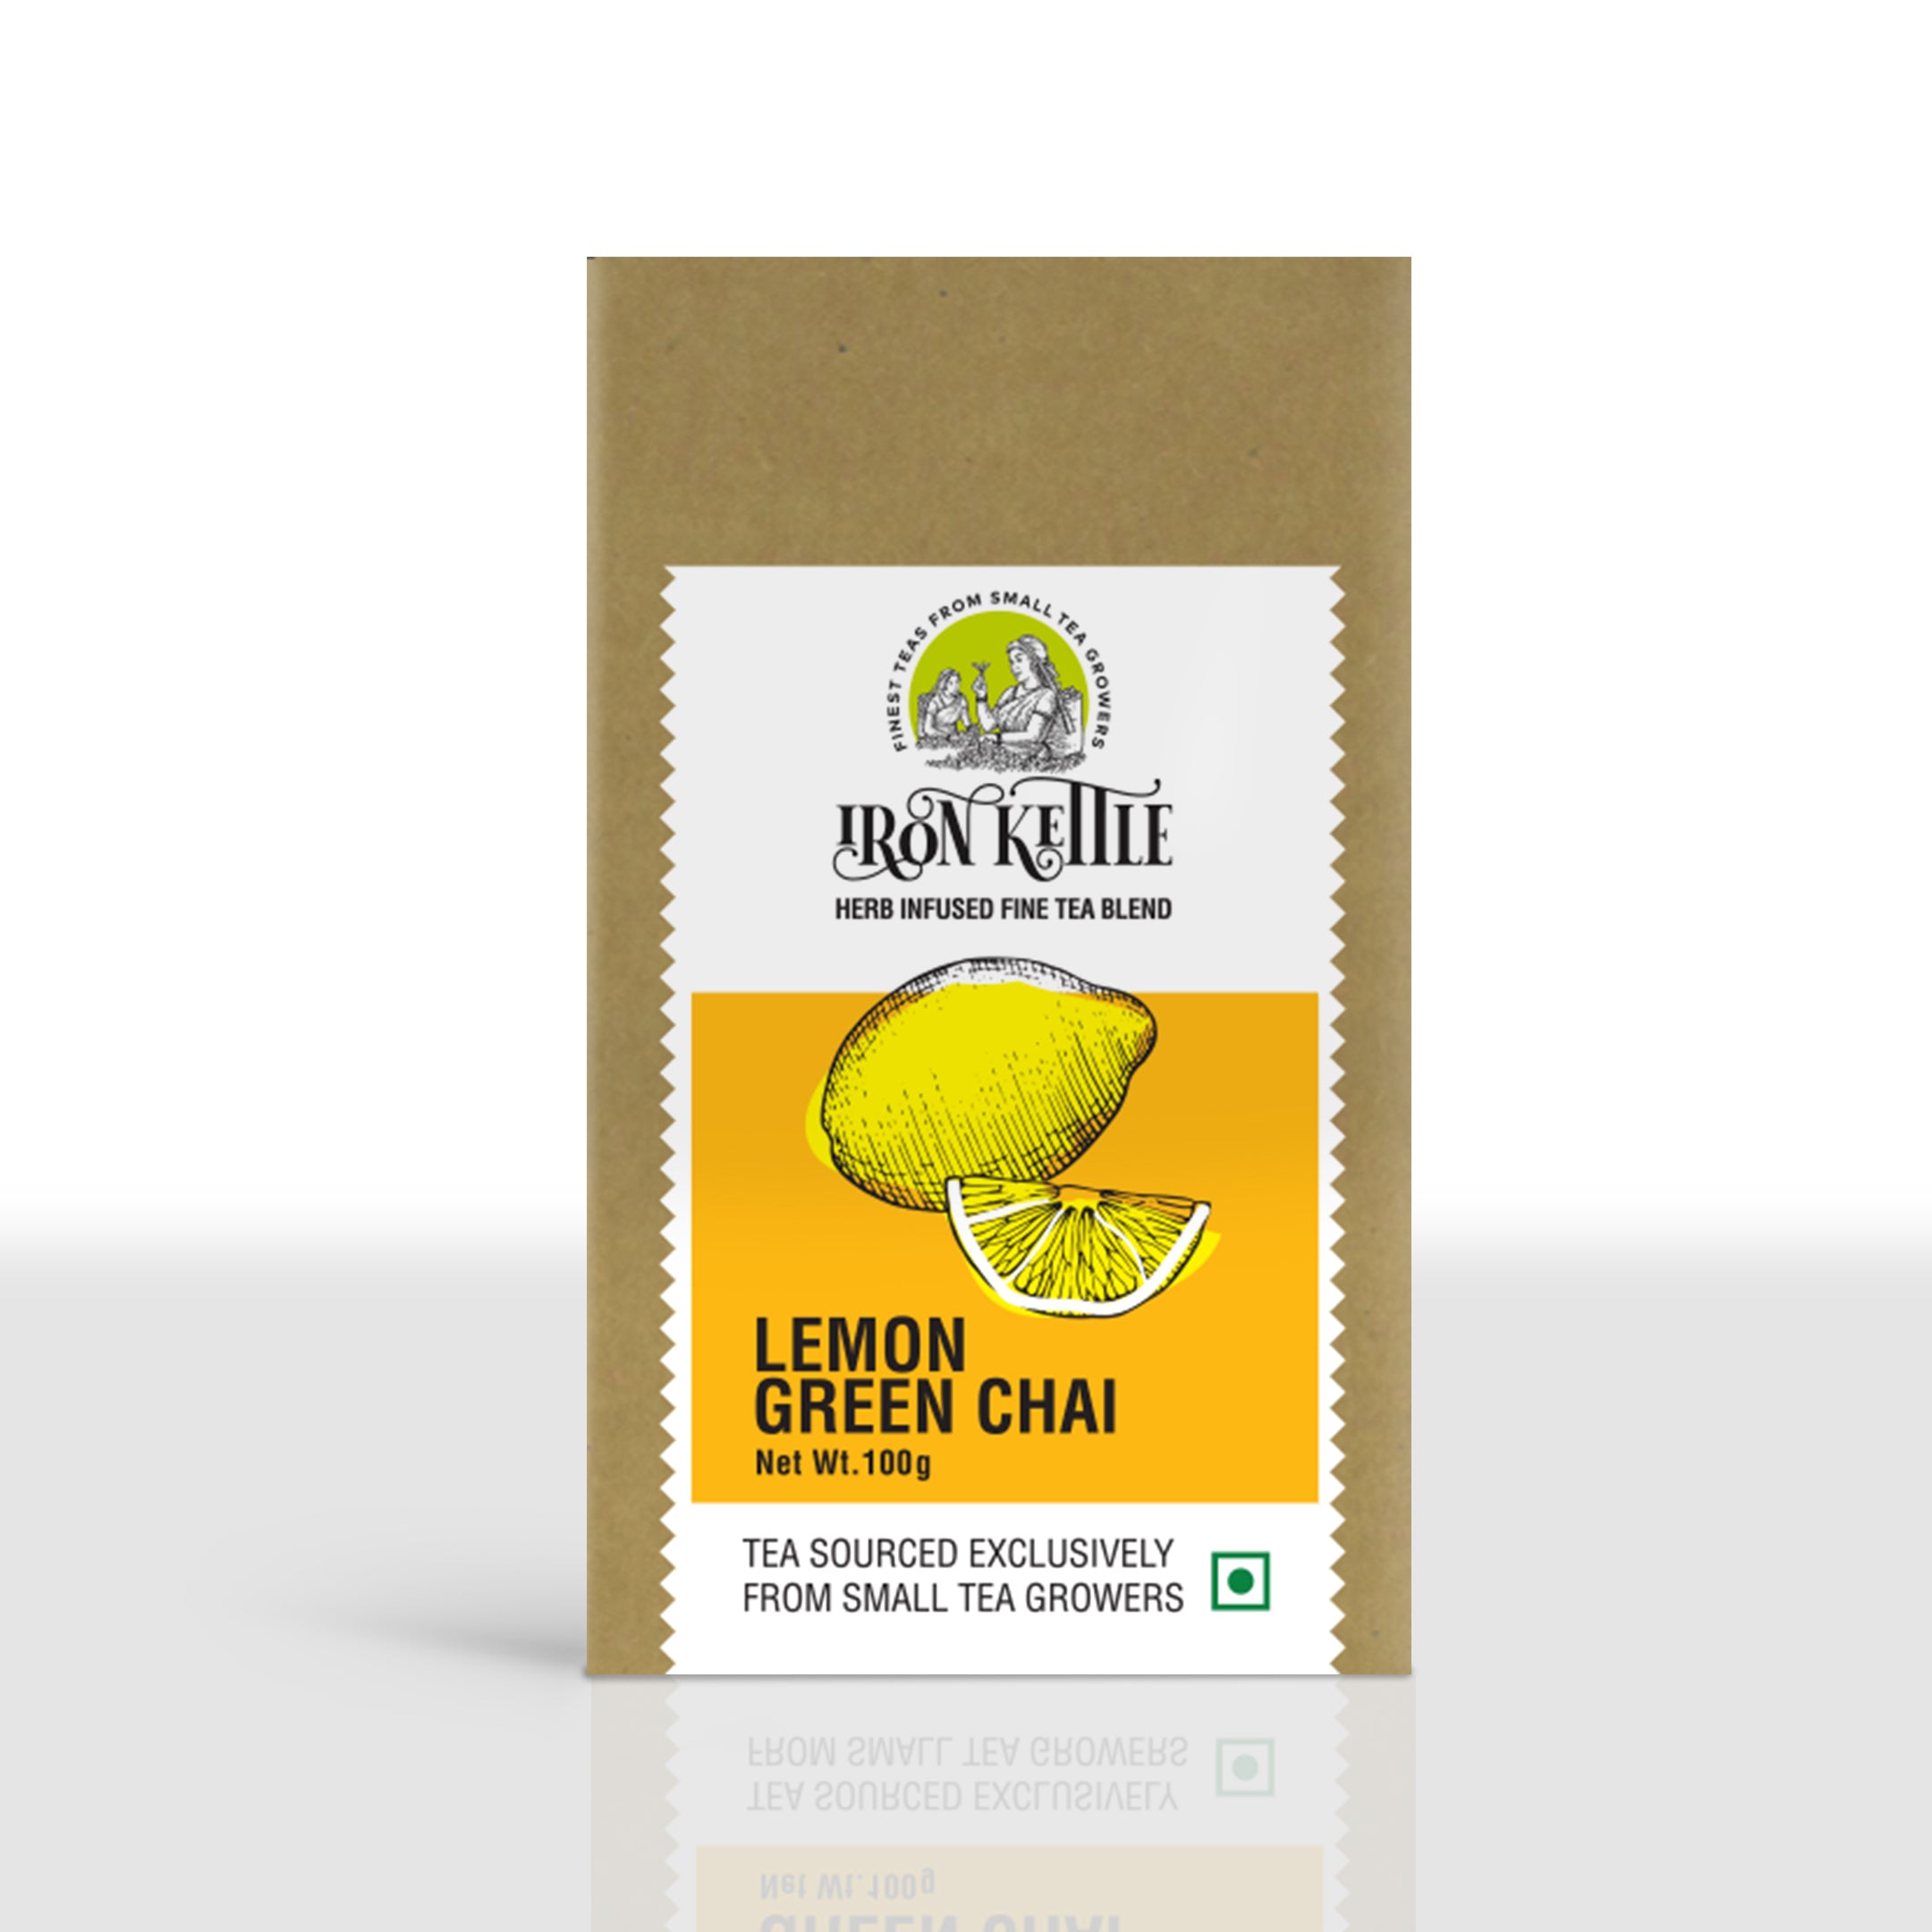 Lemon Green Chai - Iron Kettle Tea